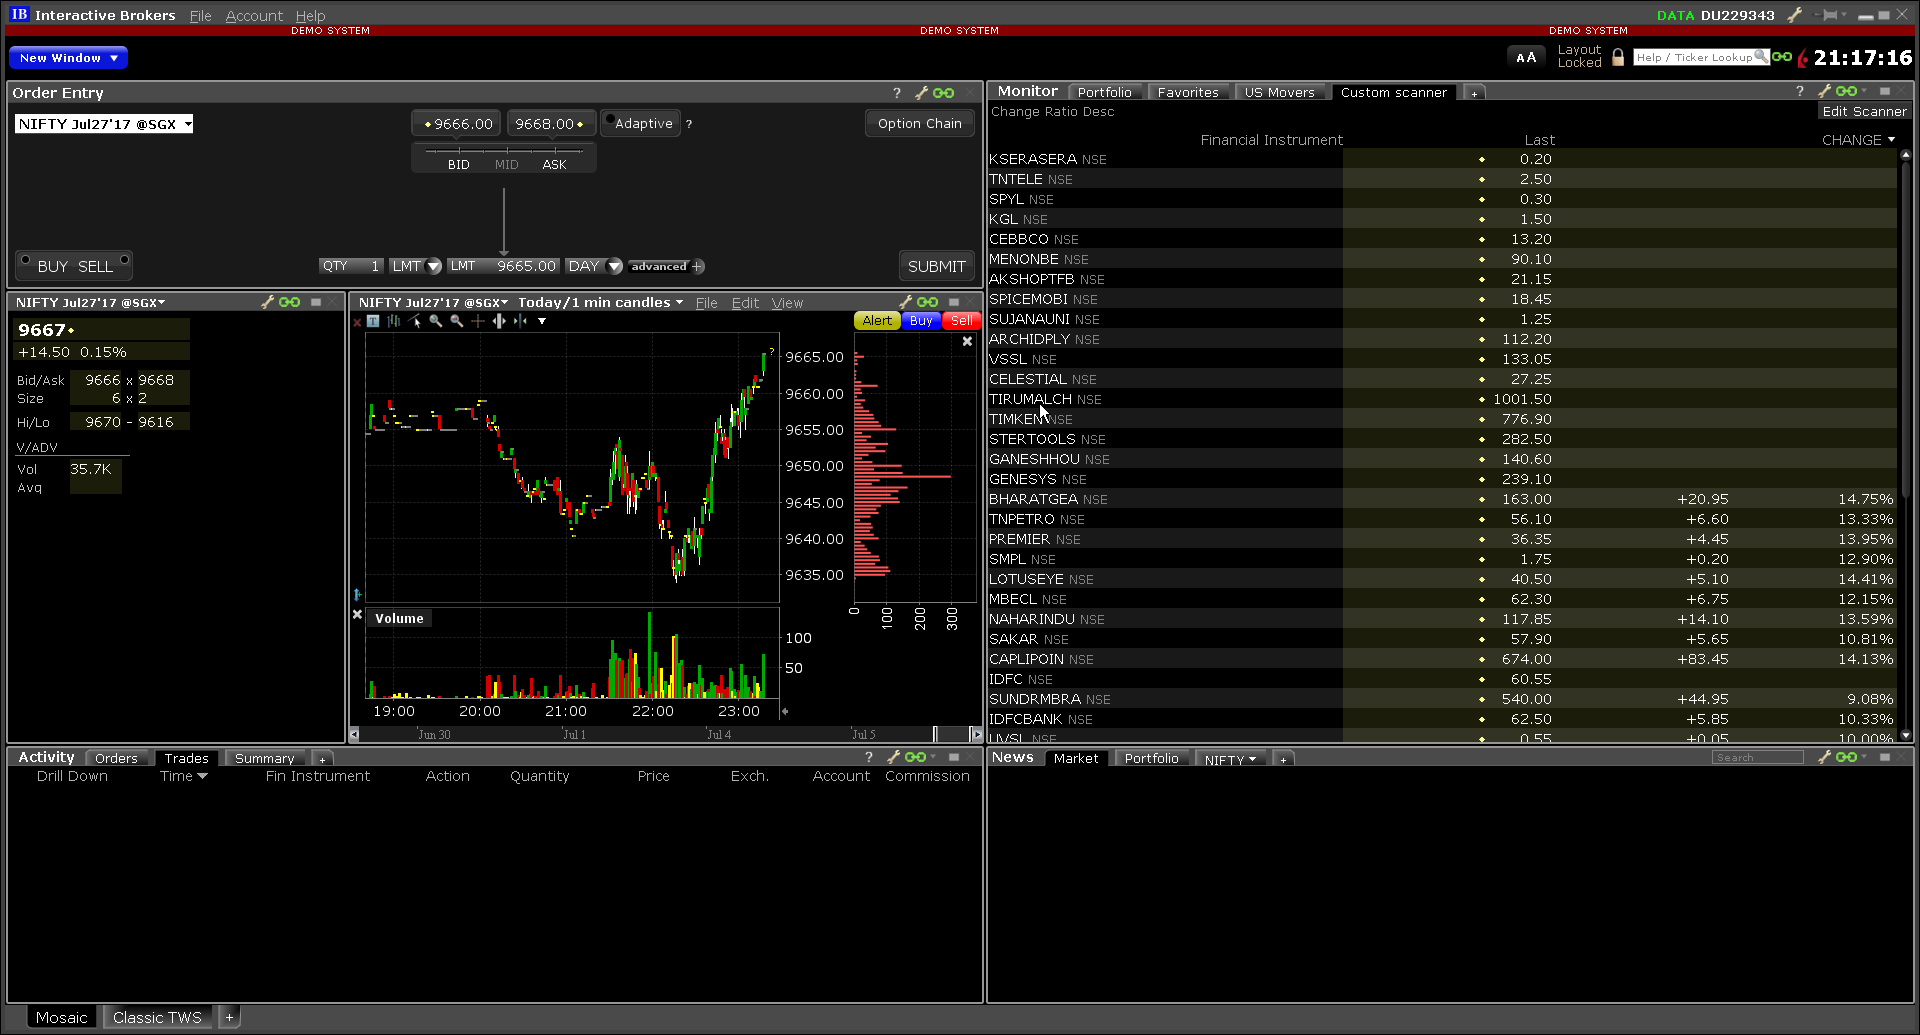 IB Trader Workstation Trading Terminal Screenshots